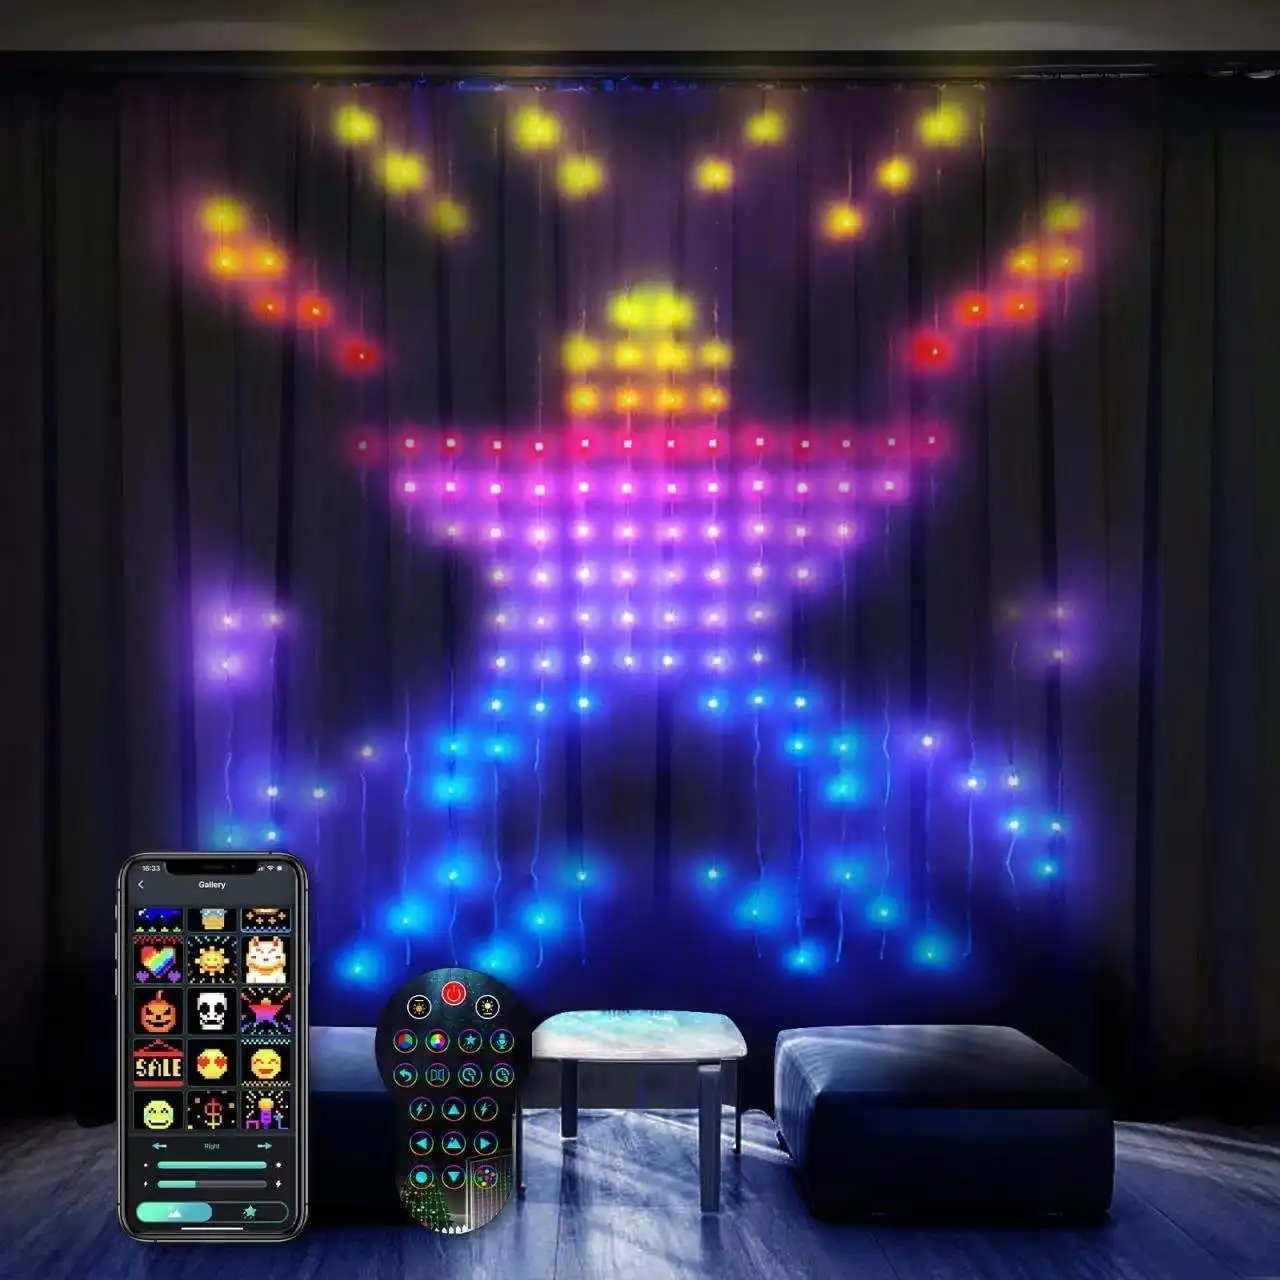 Programmierbare APP fernbedienung smart Weihnachtsdekoration märchenhortiges Licht Pixel DIY Party RGB märchenlicht